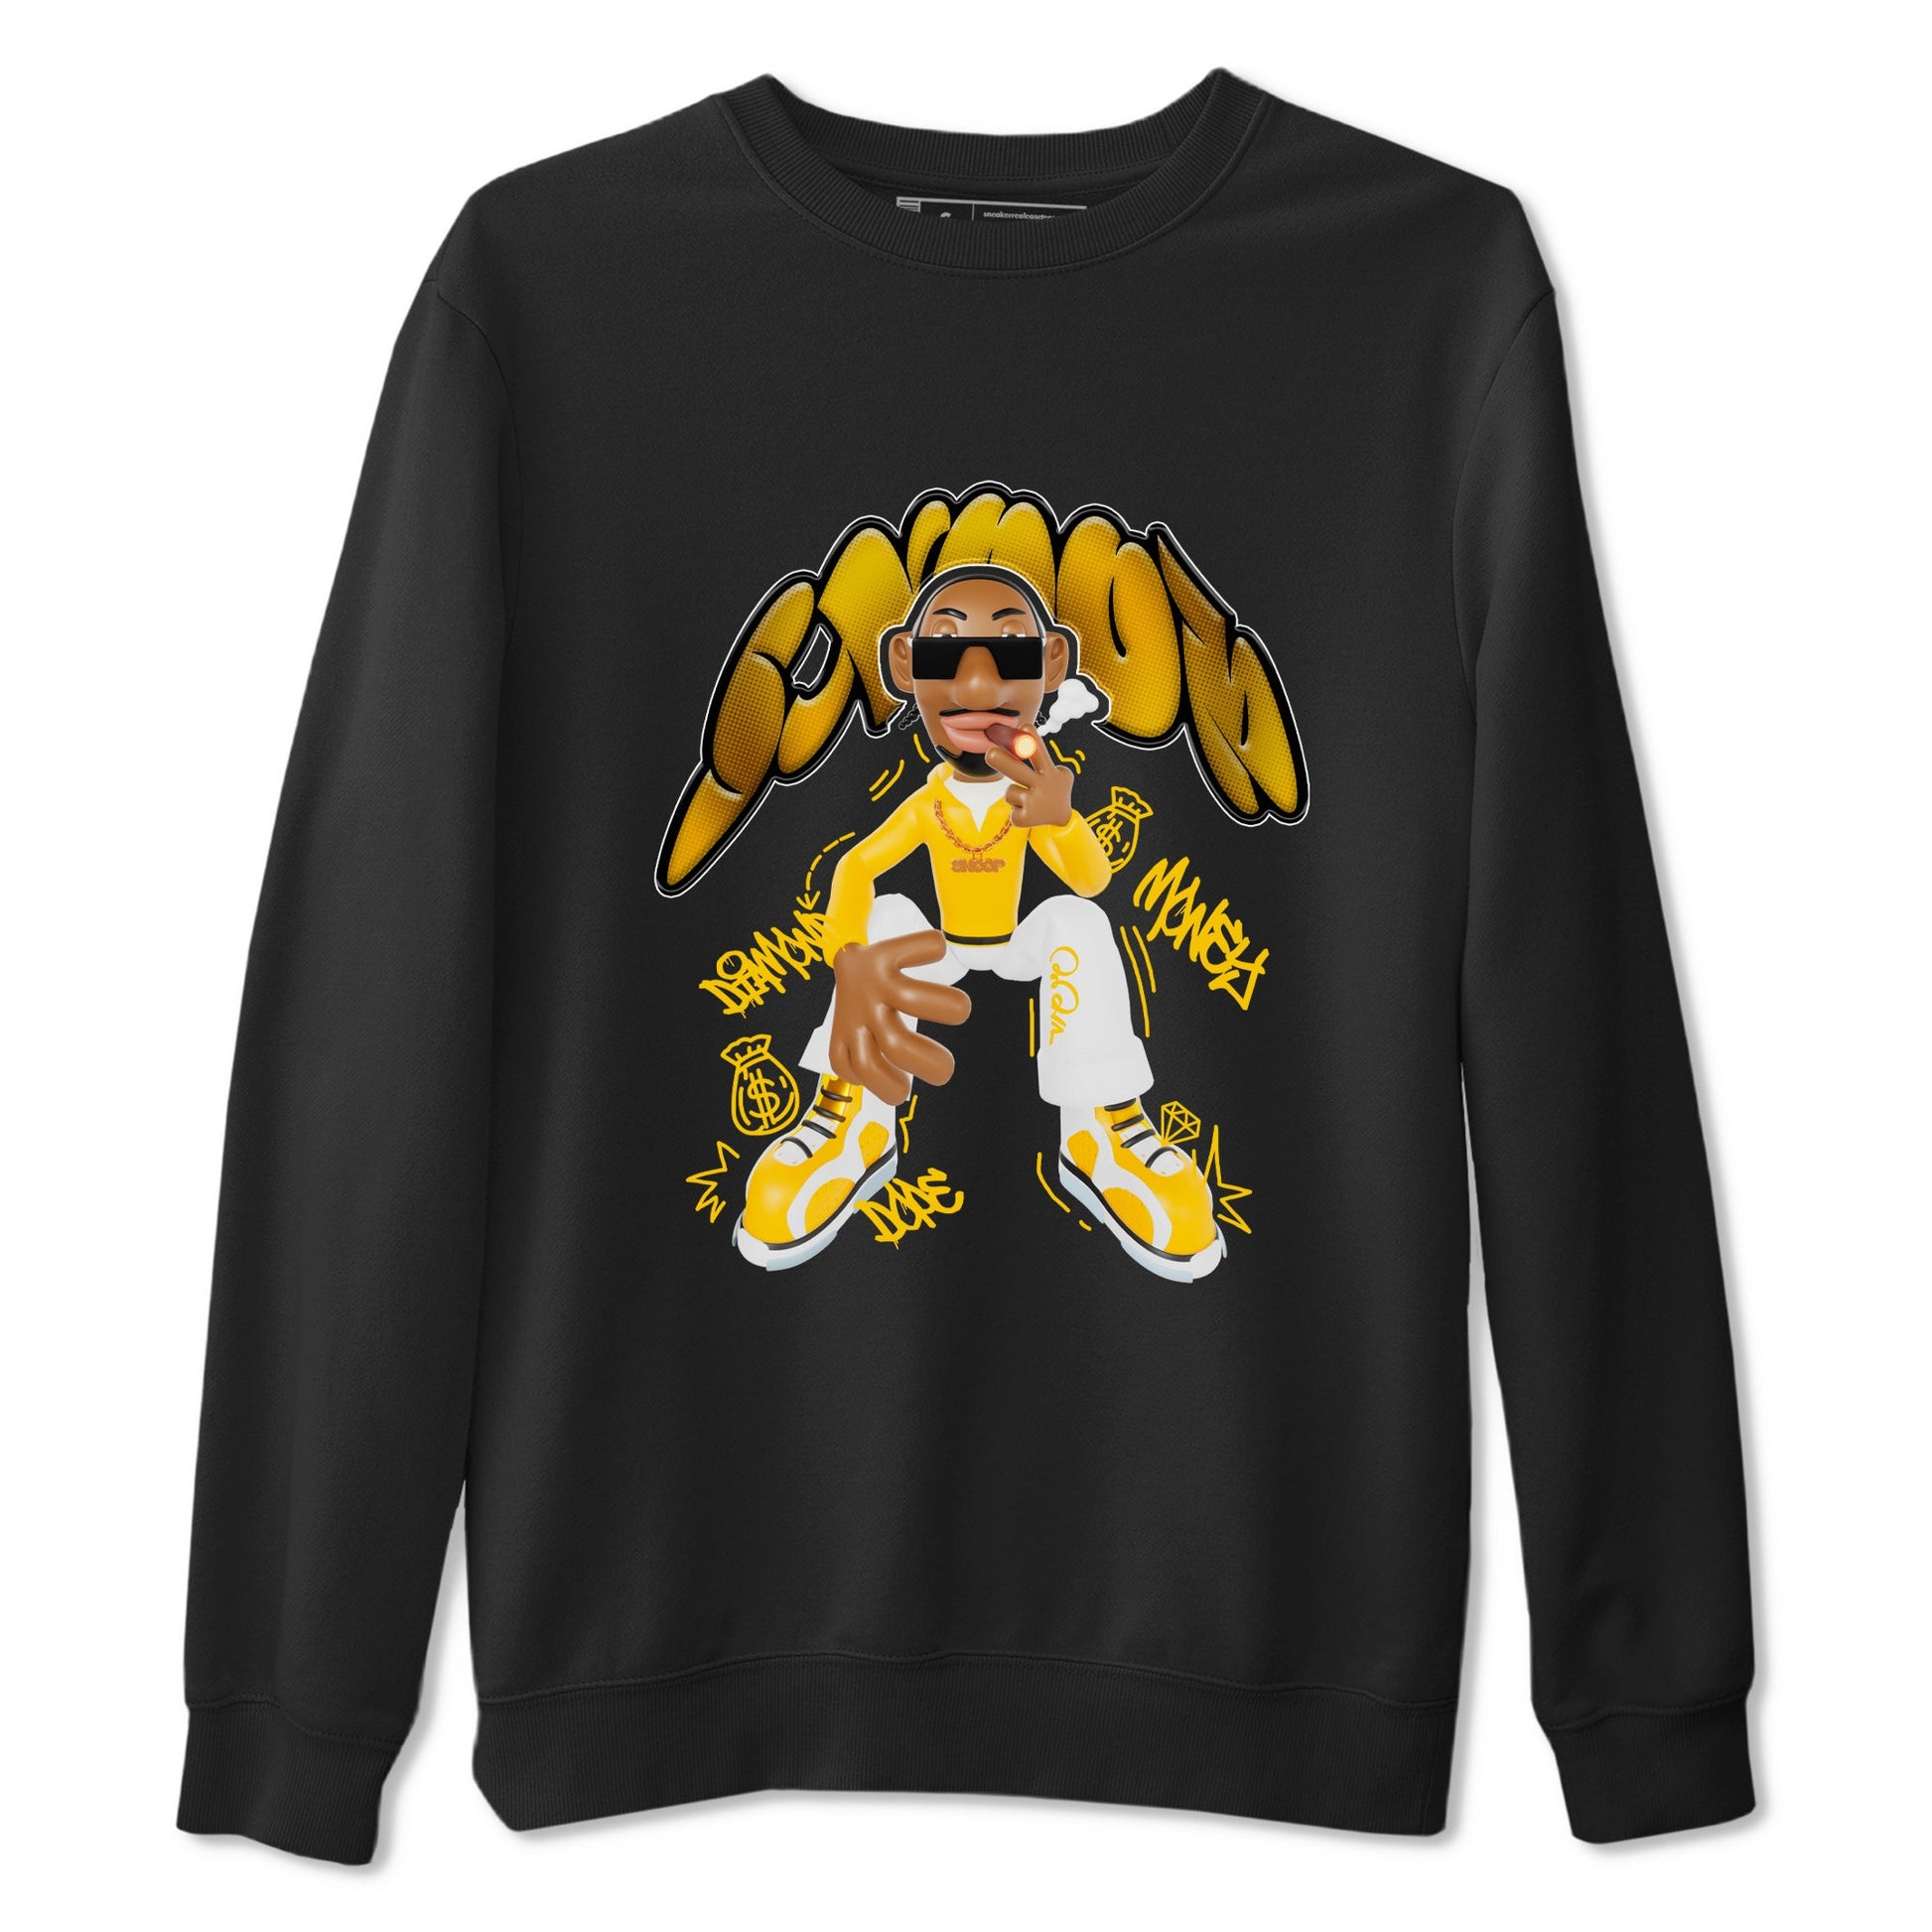 6s Yellow Ochre shirt to match jordans Snoop sneaker tees Air Jordan 6 Yellow Ochre SNRT Sneaker Release Tees Unisex Black 2 T-Shirt